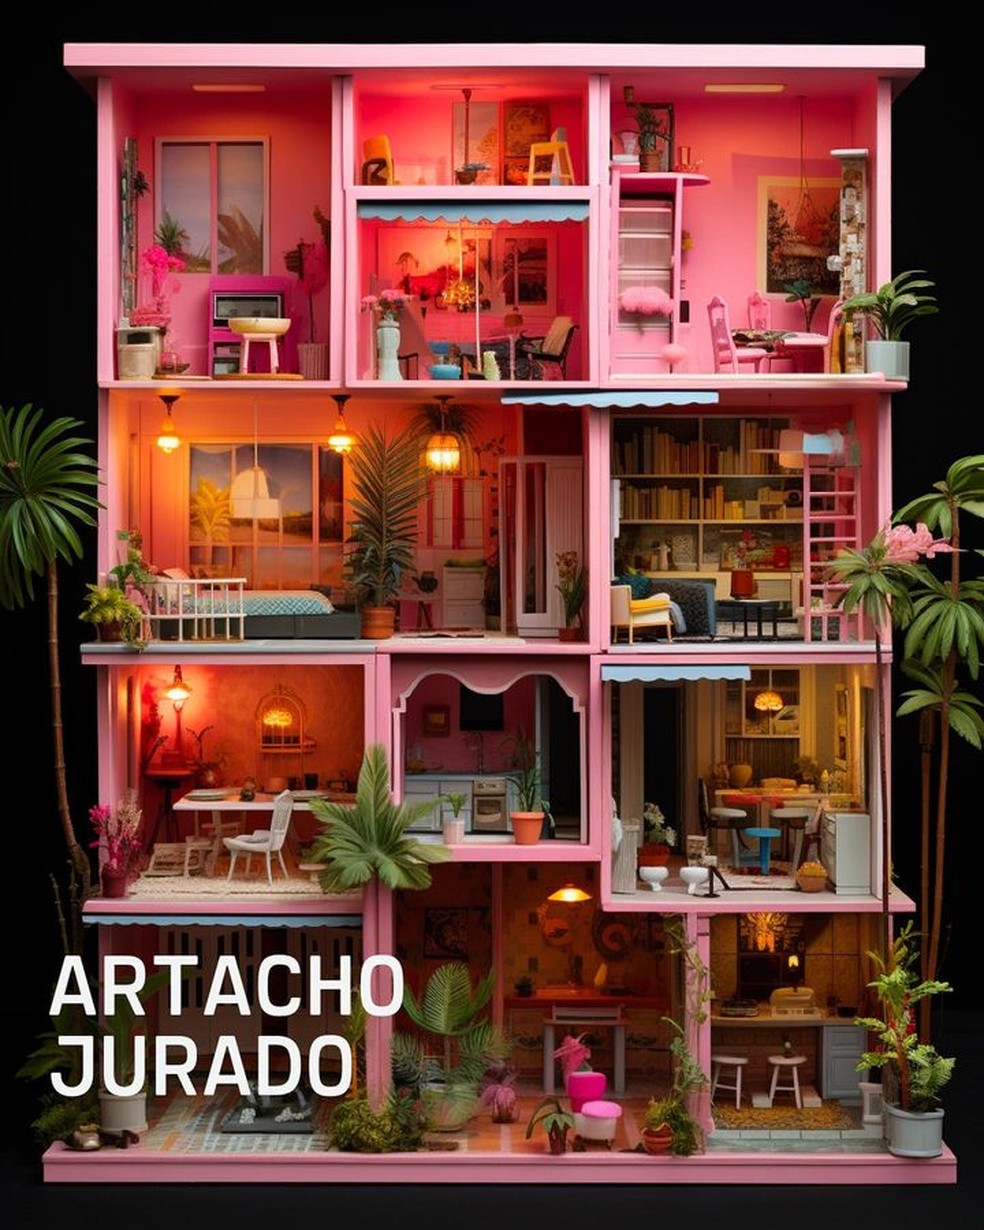 Como seria a casa da Barbie projetada por arquitetos brasileiros